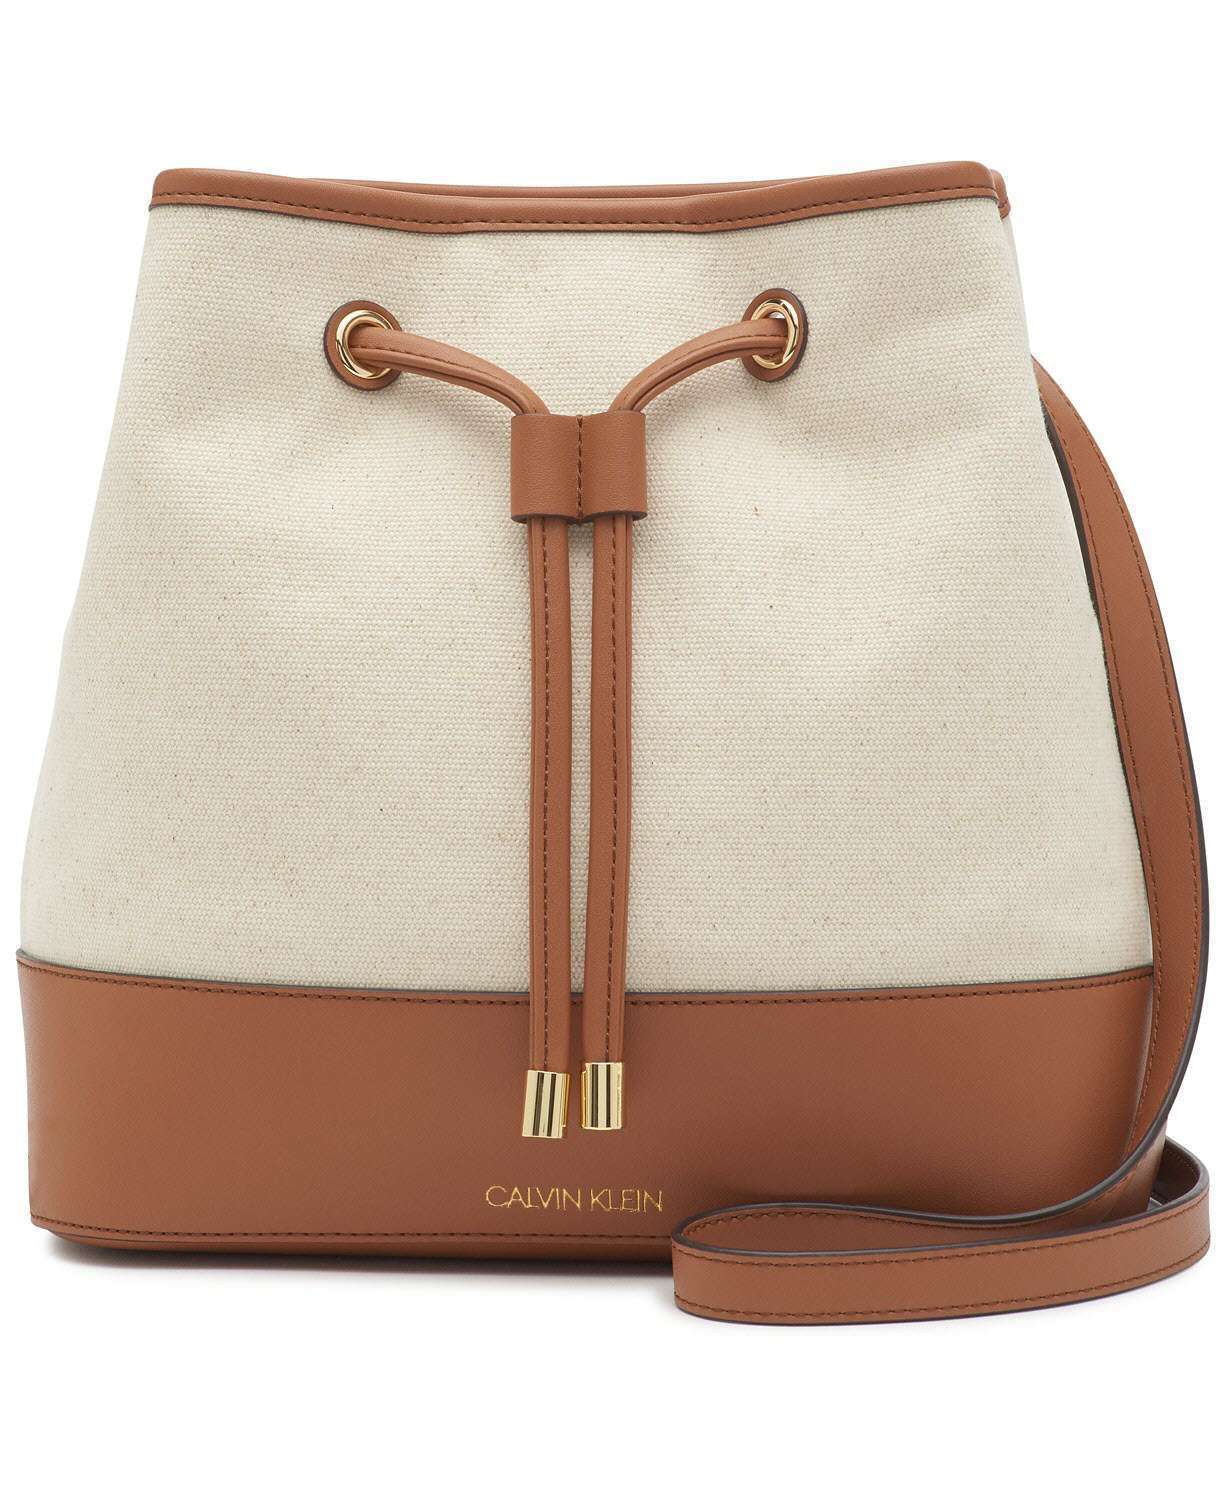 Calvin Klein Gabriana Bucket Bag - elegance21 - Kuwait